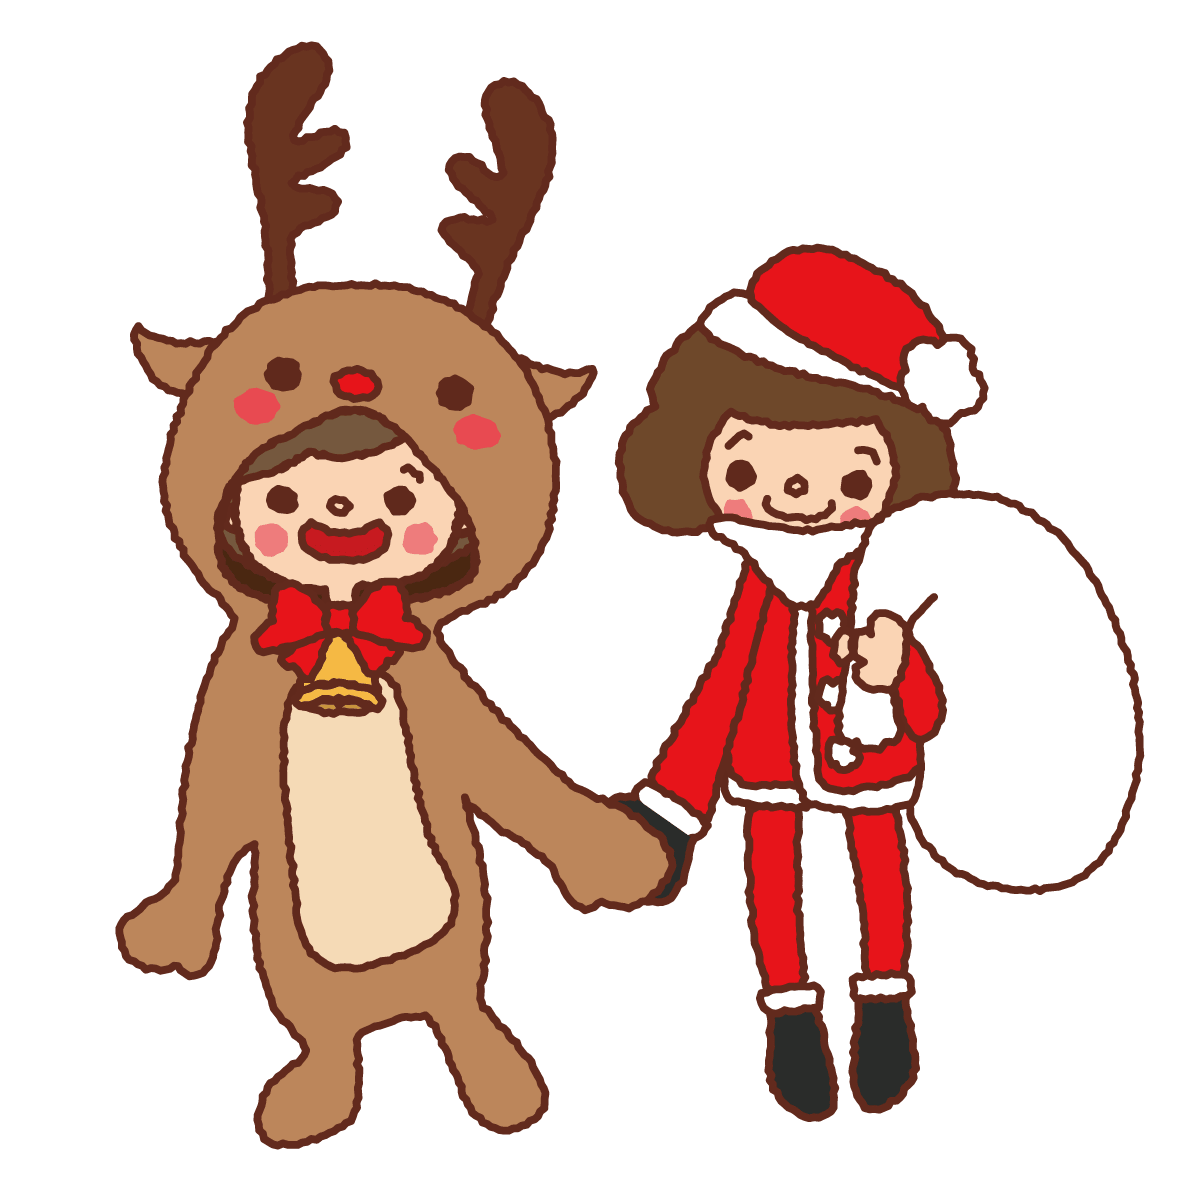 12月かわいいイラスト クリスマス仮装の男の子と女の子 イラスト素材 超多くの無料かわいいイラスト素材